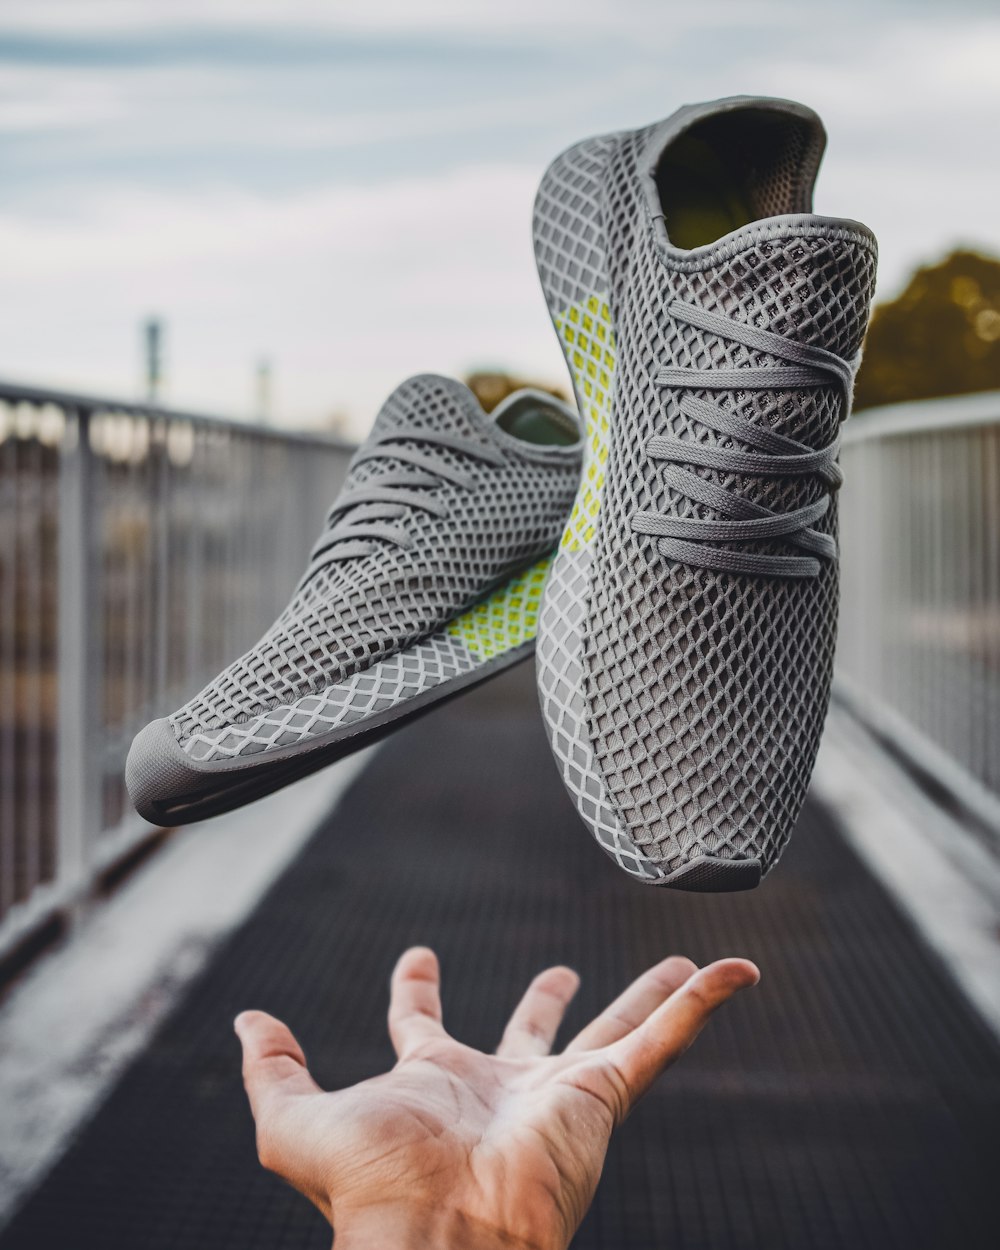 Imágenes de Adidas Schuhe | Descarga imágenes gratuitas en Unsplash